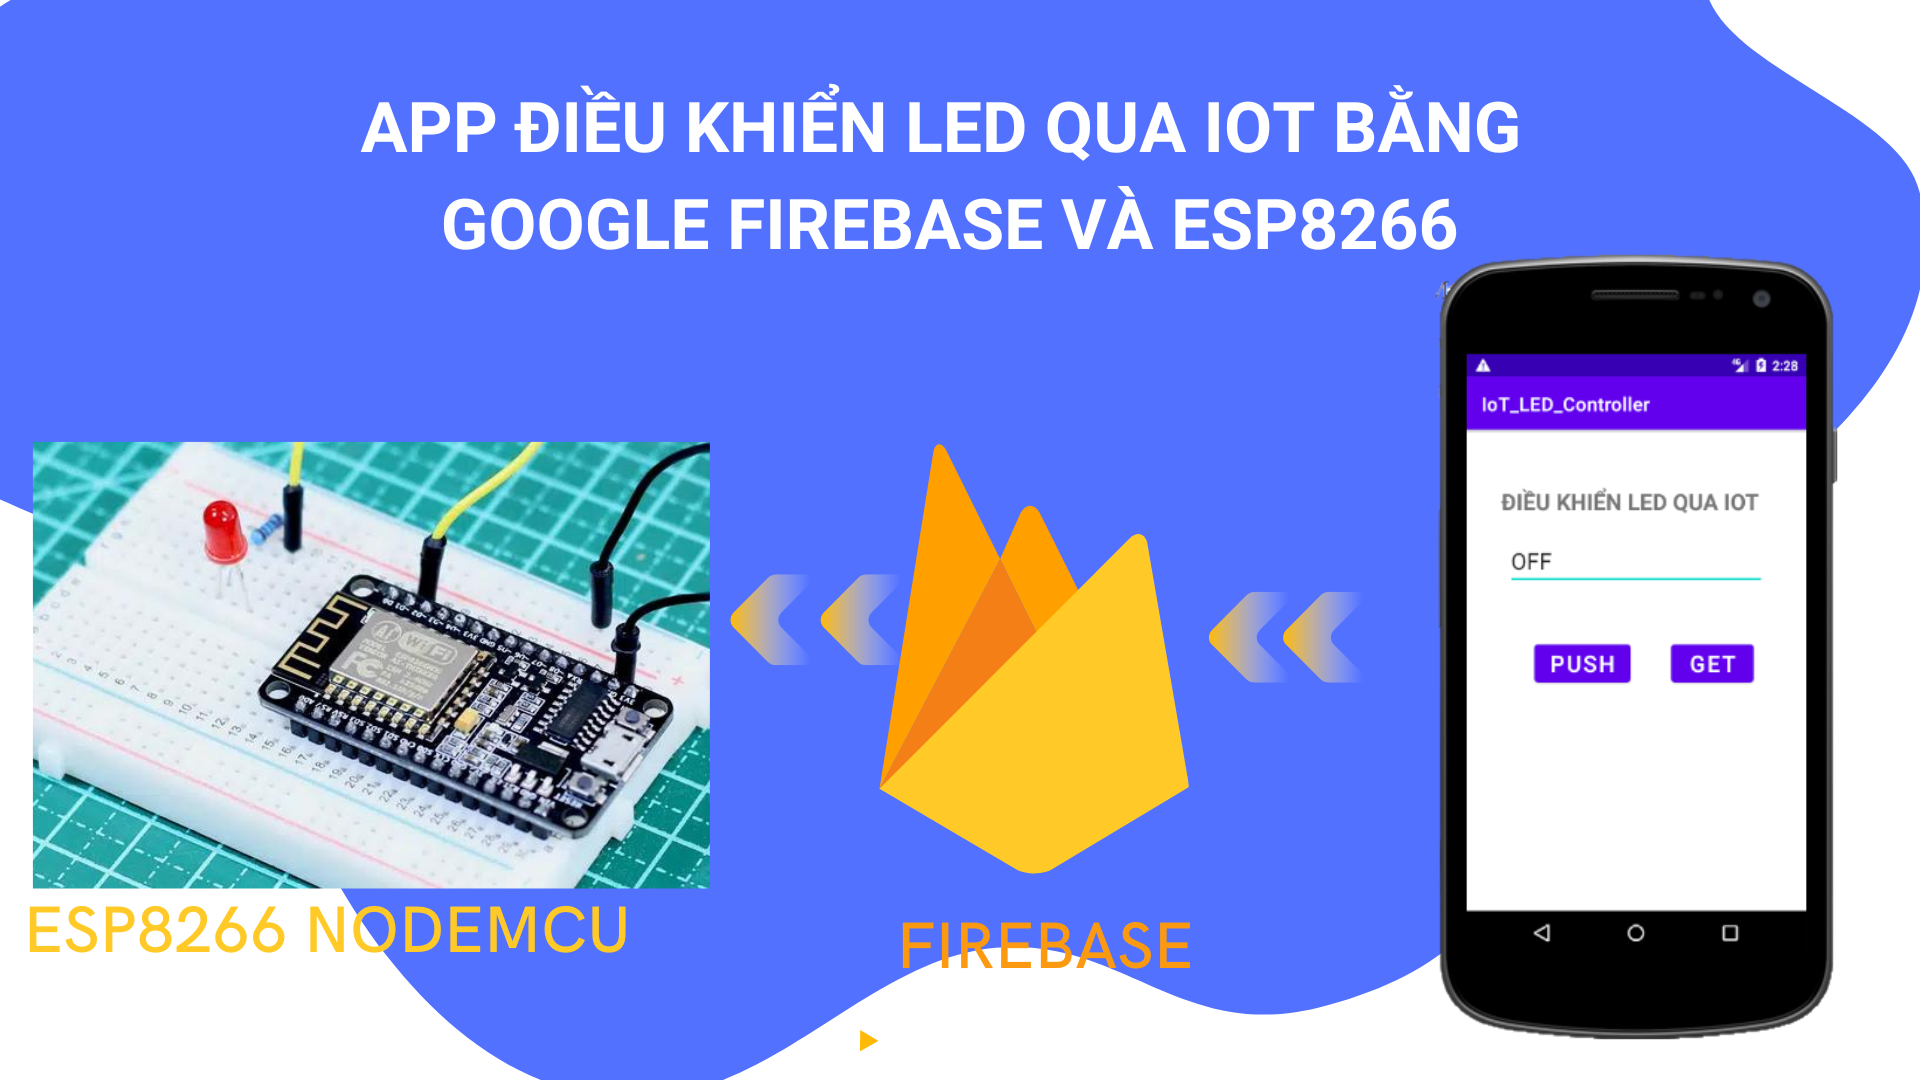 Tạo ứng dụng Android giao tiếp với cơ sở dữ liệu Firebase, điều khiển LED từ xa với ESP8266